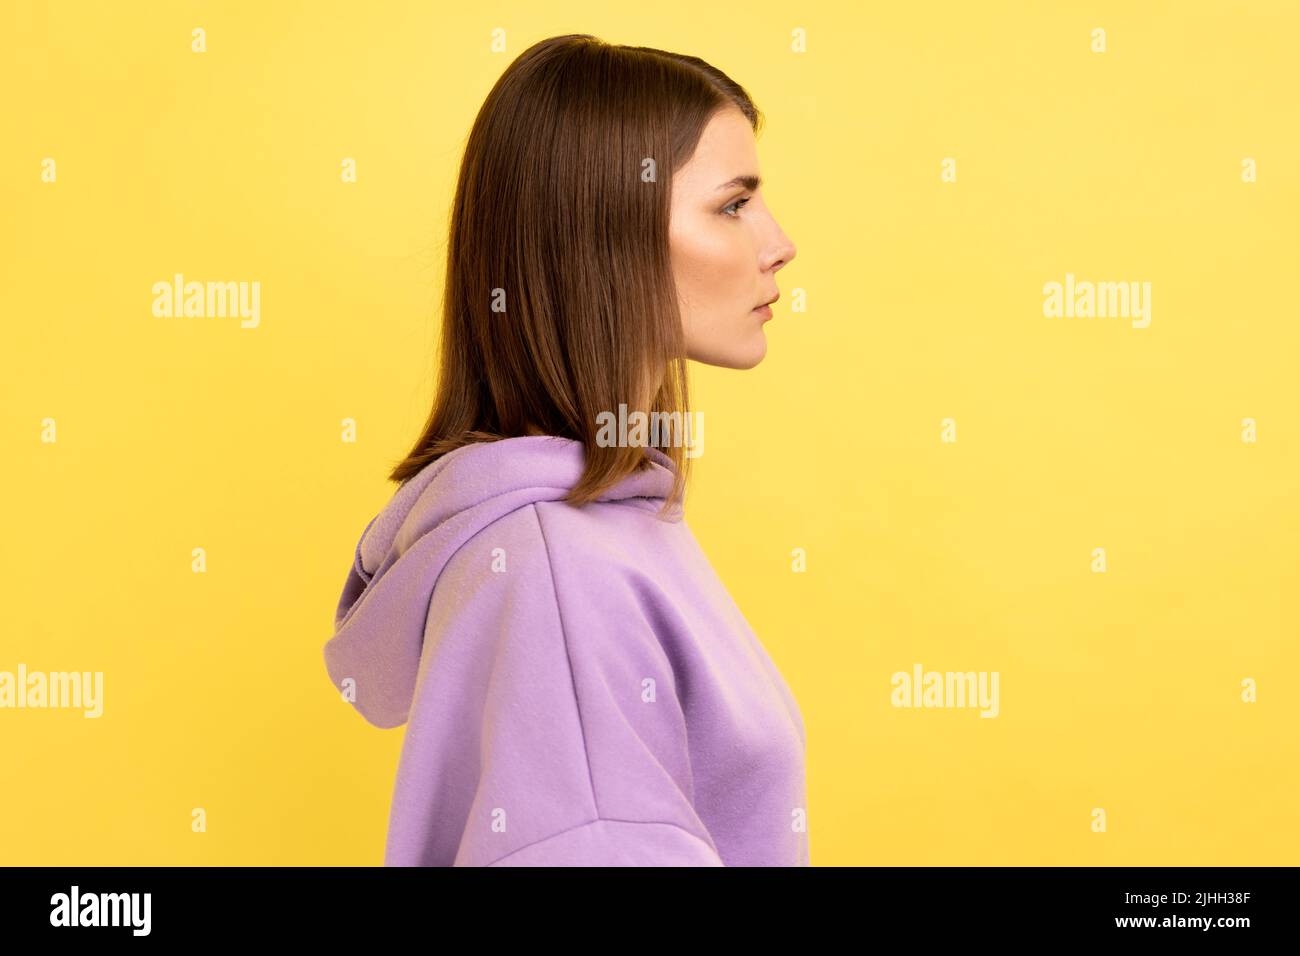 Seitenansicht einer jungen, seriös unlächelnden, strengen Frau, die mit einem ruhigen, aufmerksamen Gesichtsausdruck die Kamera anschaut und einen violetten Hoodie trägt. Innenaufnahme des Studios isoliert auf gelbem Hintergrund. Stockfoto